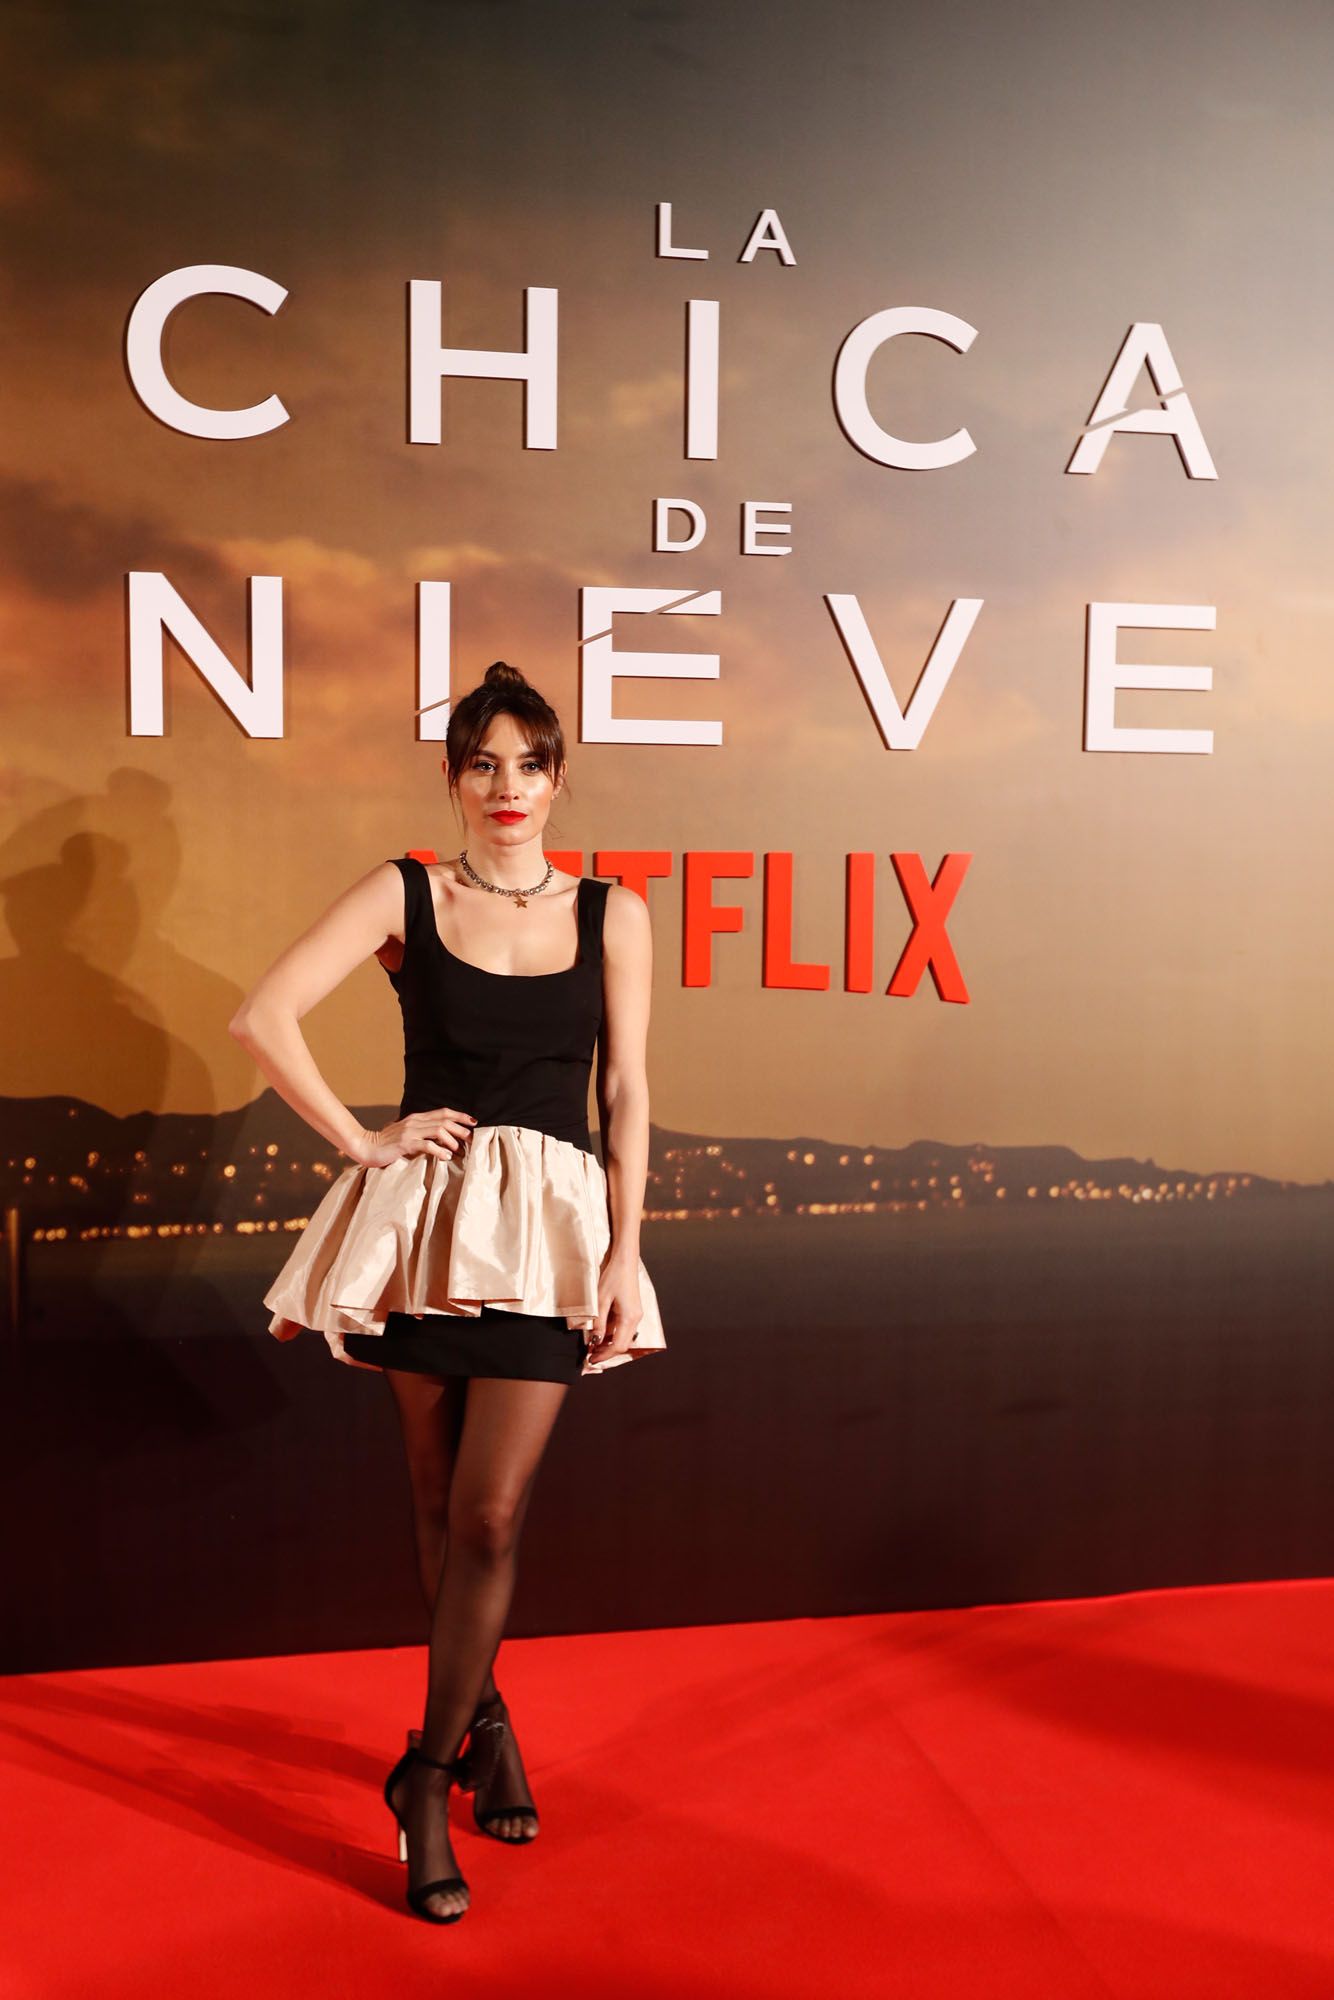 Premiere de la serie 'La chica de nieve' de Netflix en el Cine Albéniz